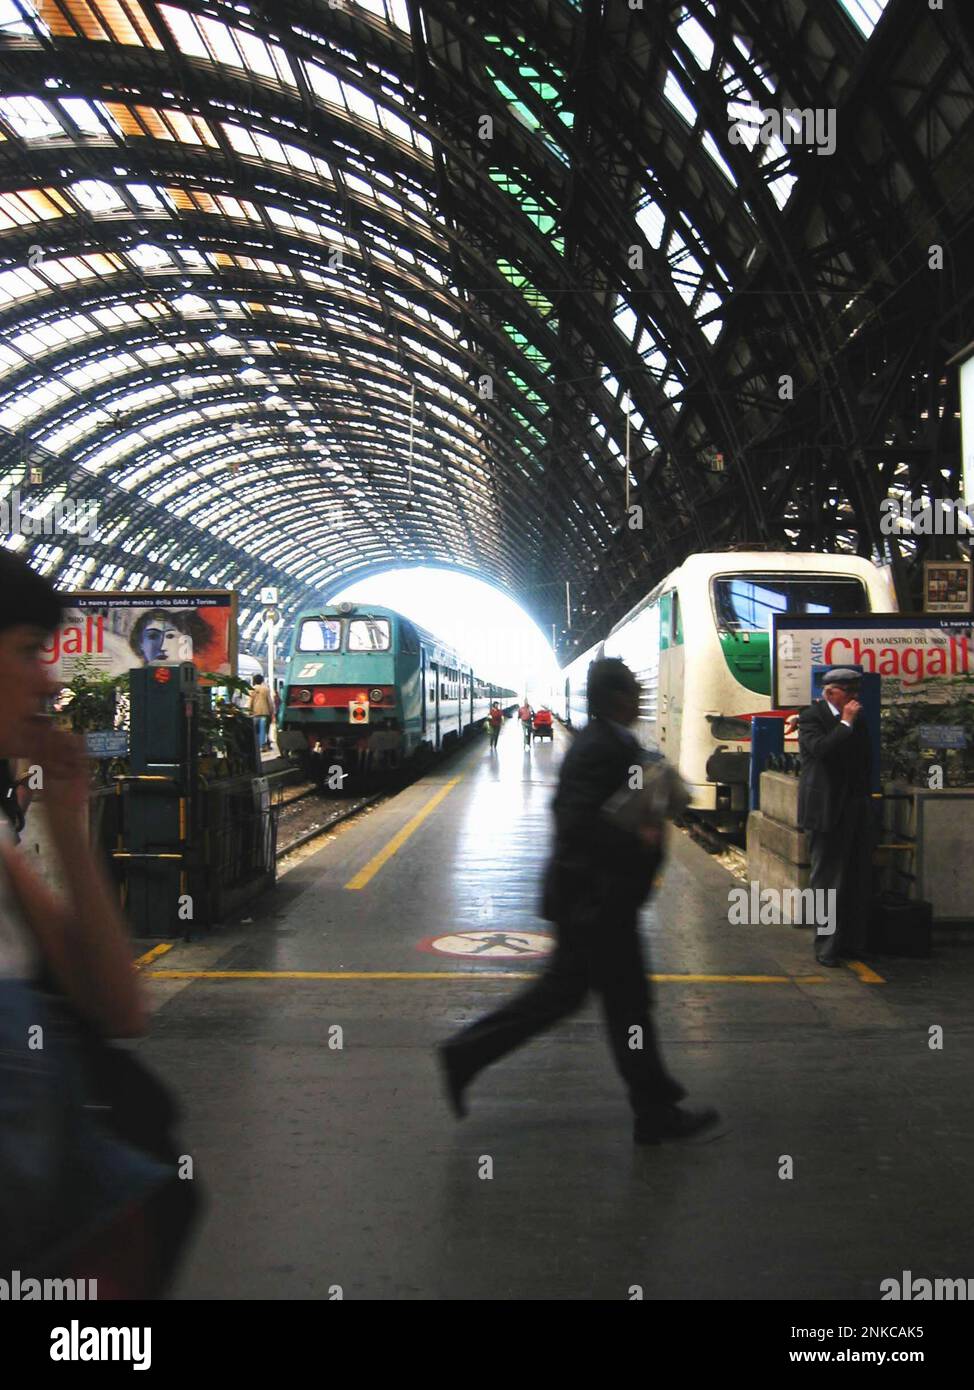 2004 , Milan, Italie : la gare centrale (gare centrale de Raill) - ITALIA - Milan - ART DÉCO - ferroviaria - ferrovia - ferrovie - viaggiatori di fretta - speakly - ritardo - delay - passangers - passeggero - passeggieri ---- photo de Giovanbattista BRILLA - GBvio B-- Banque D'Images